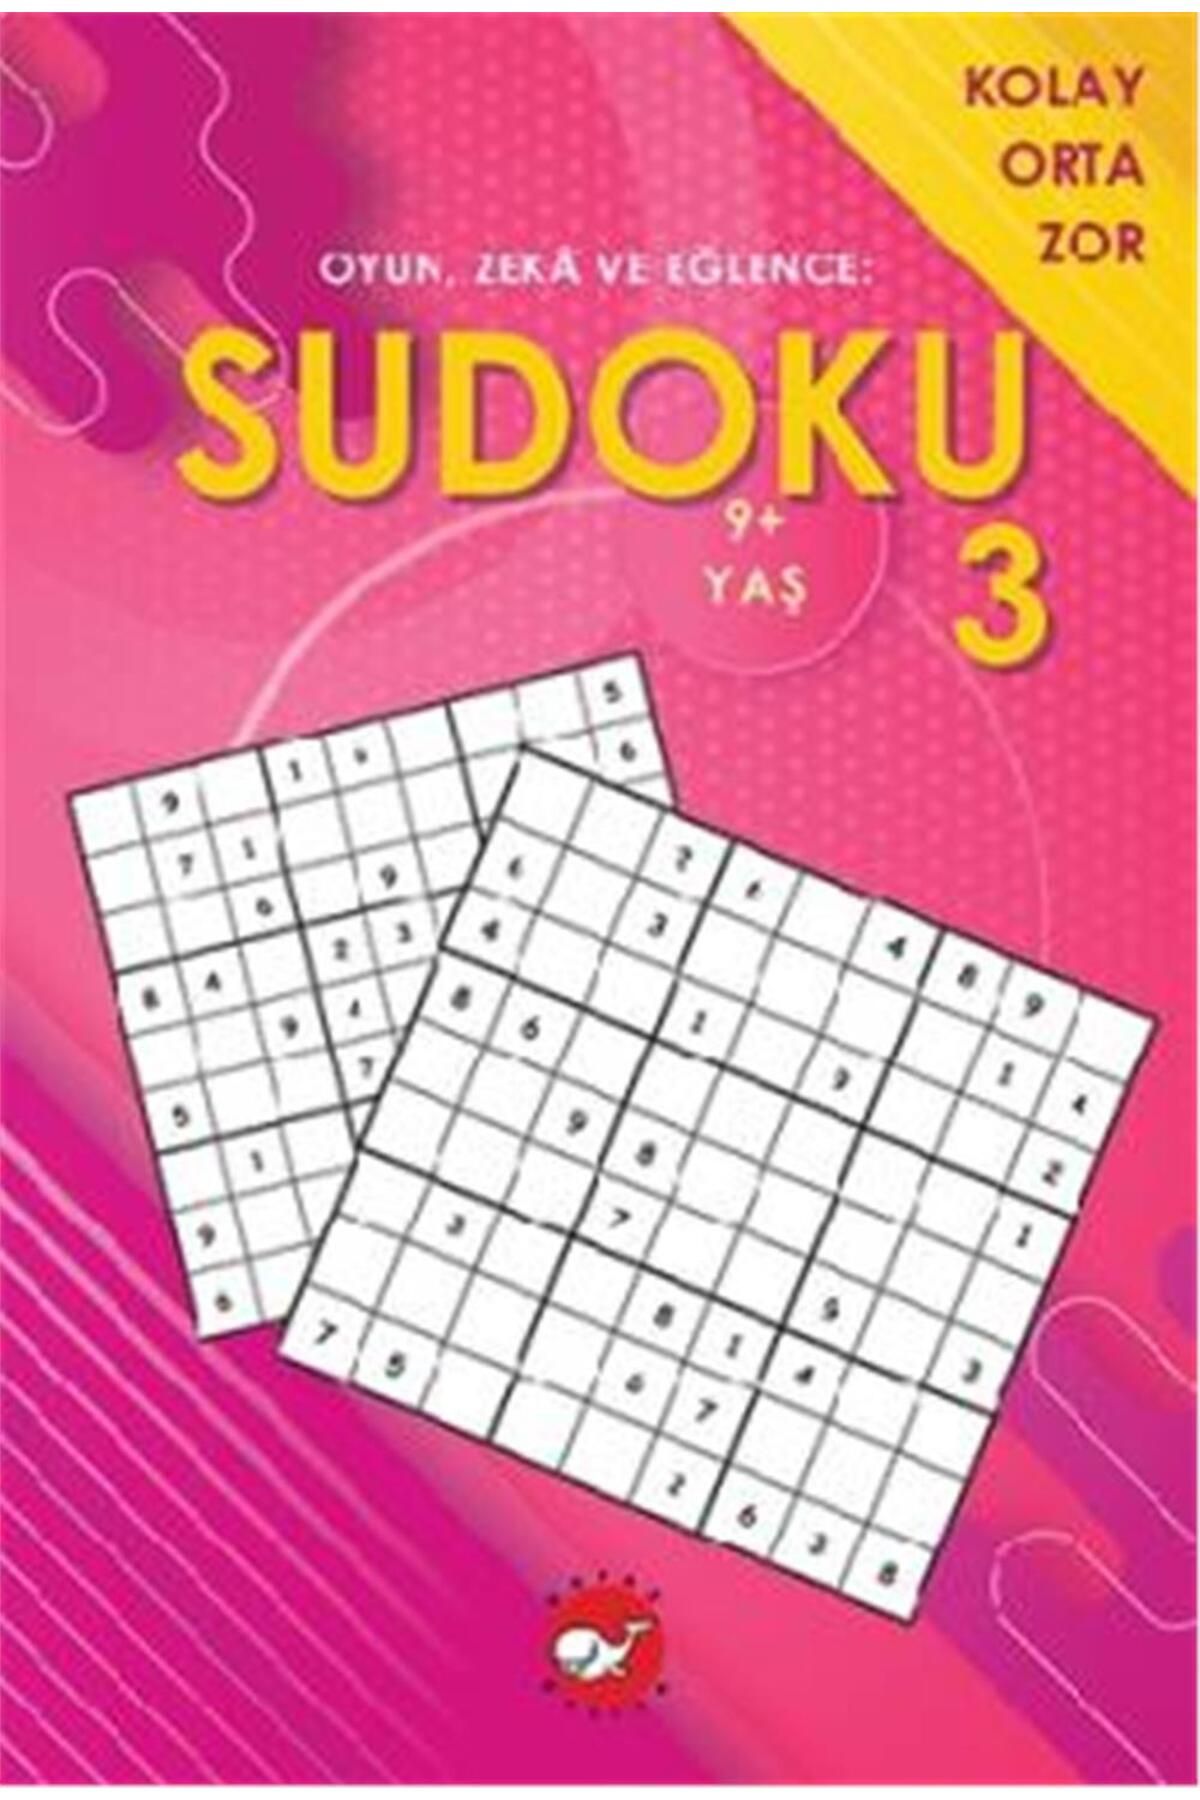 Beyaz Balina Yayınları Sudoku 3 - Kolay Orta Zor